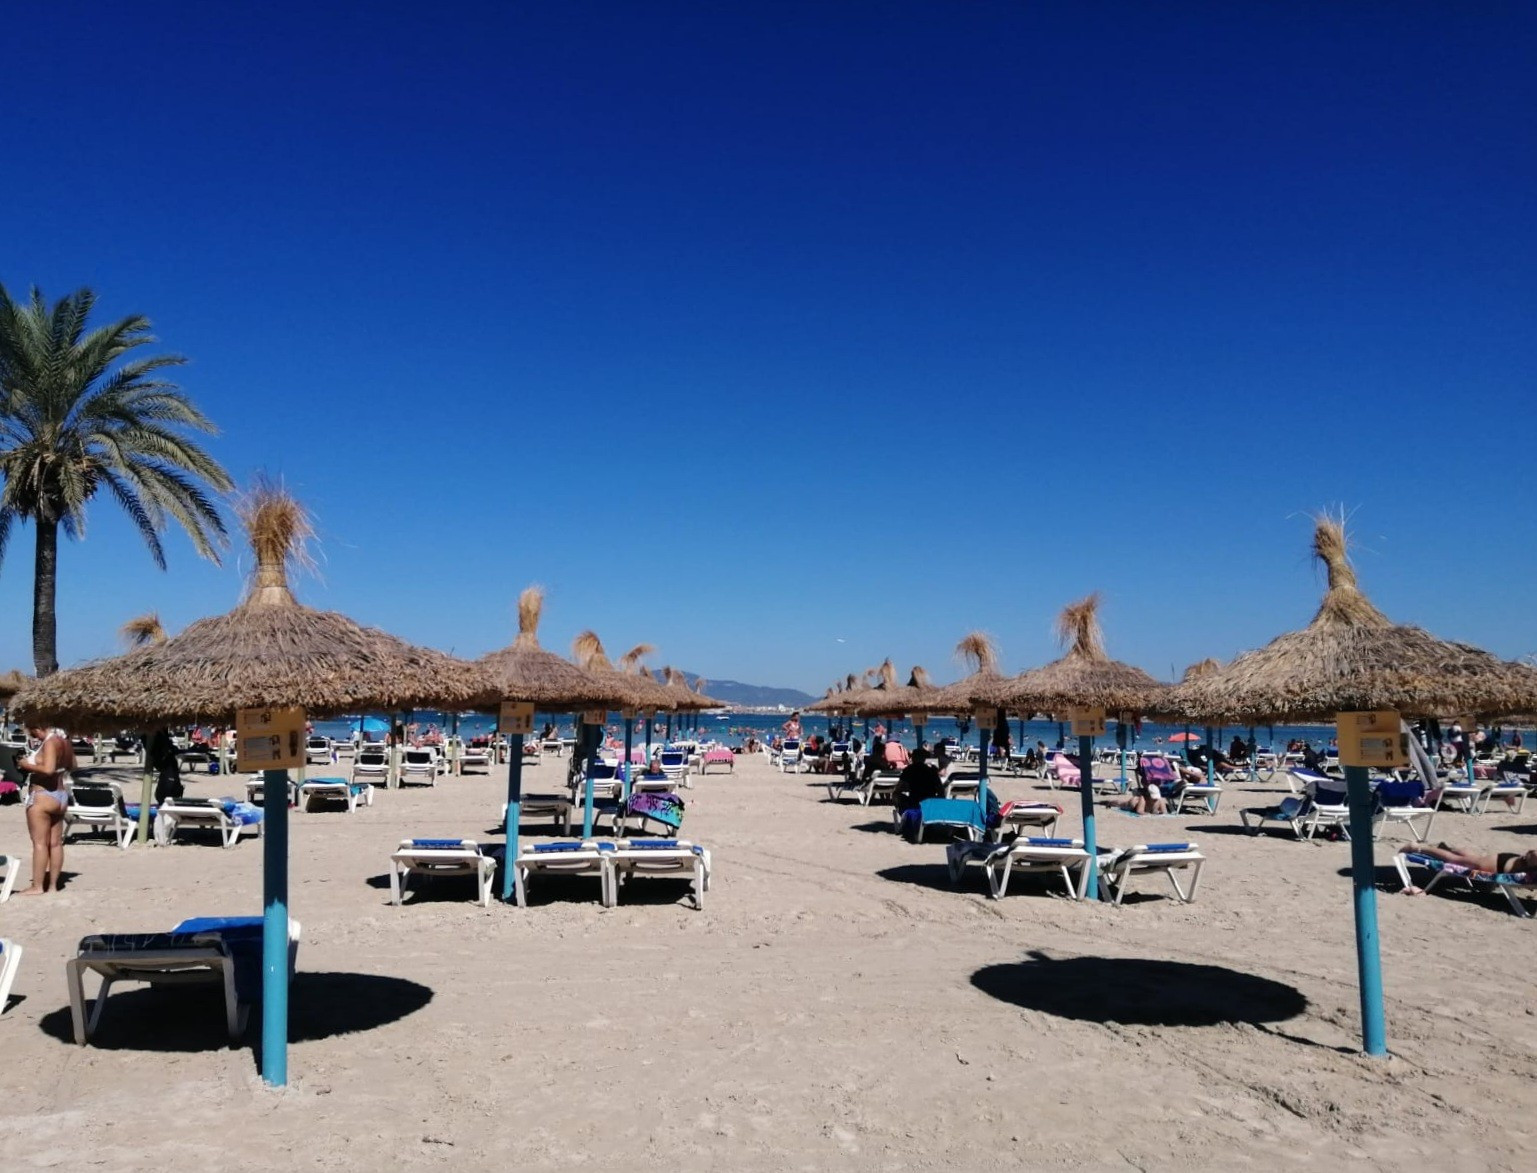 Palma de Mallorca — beach